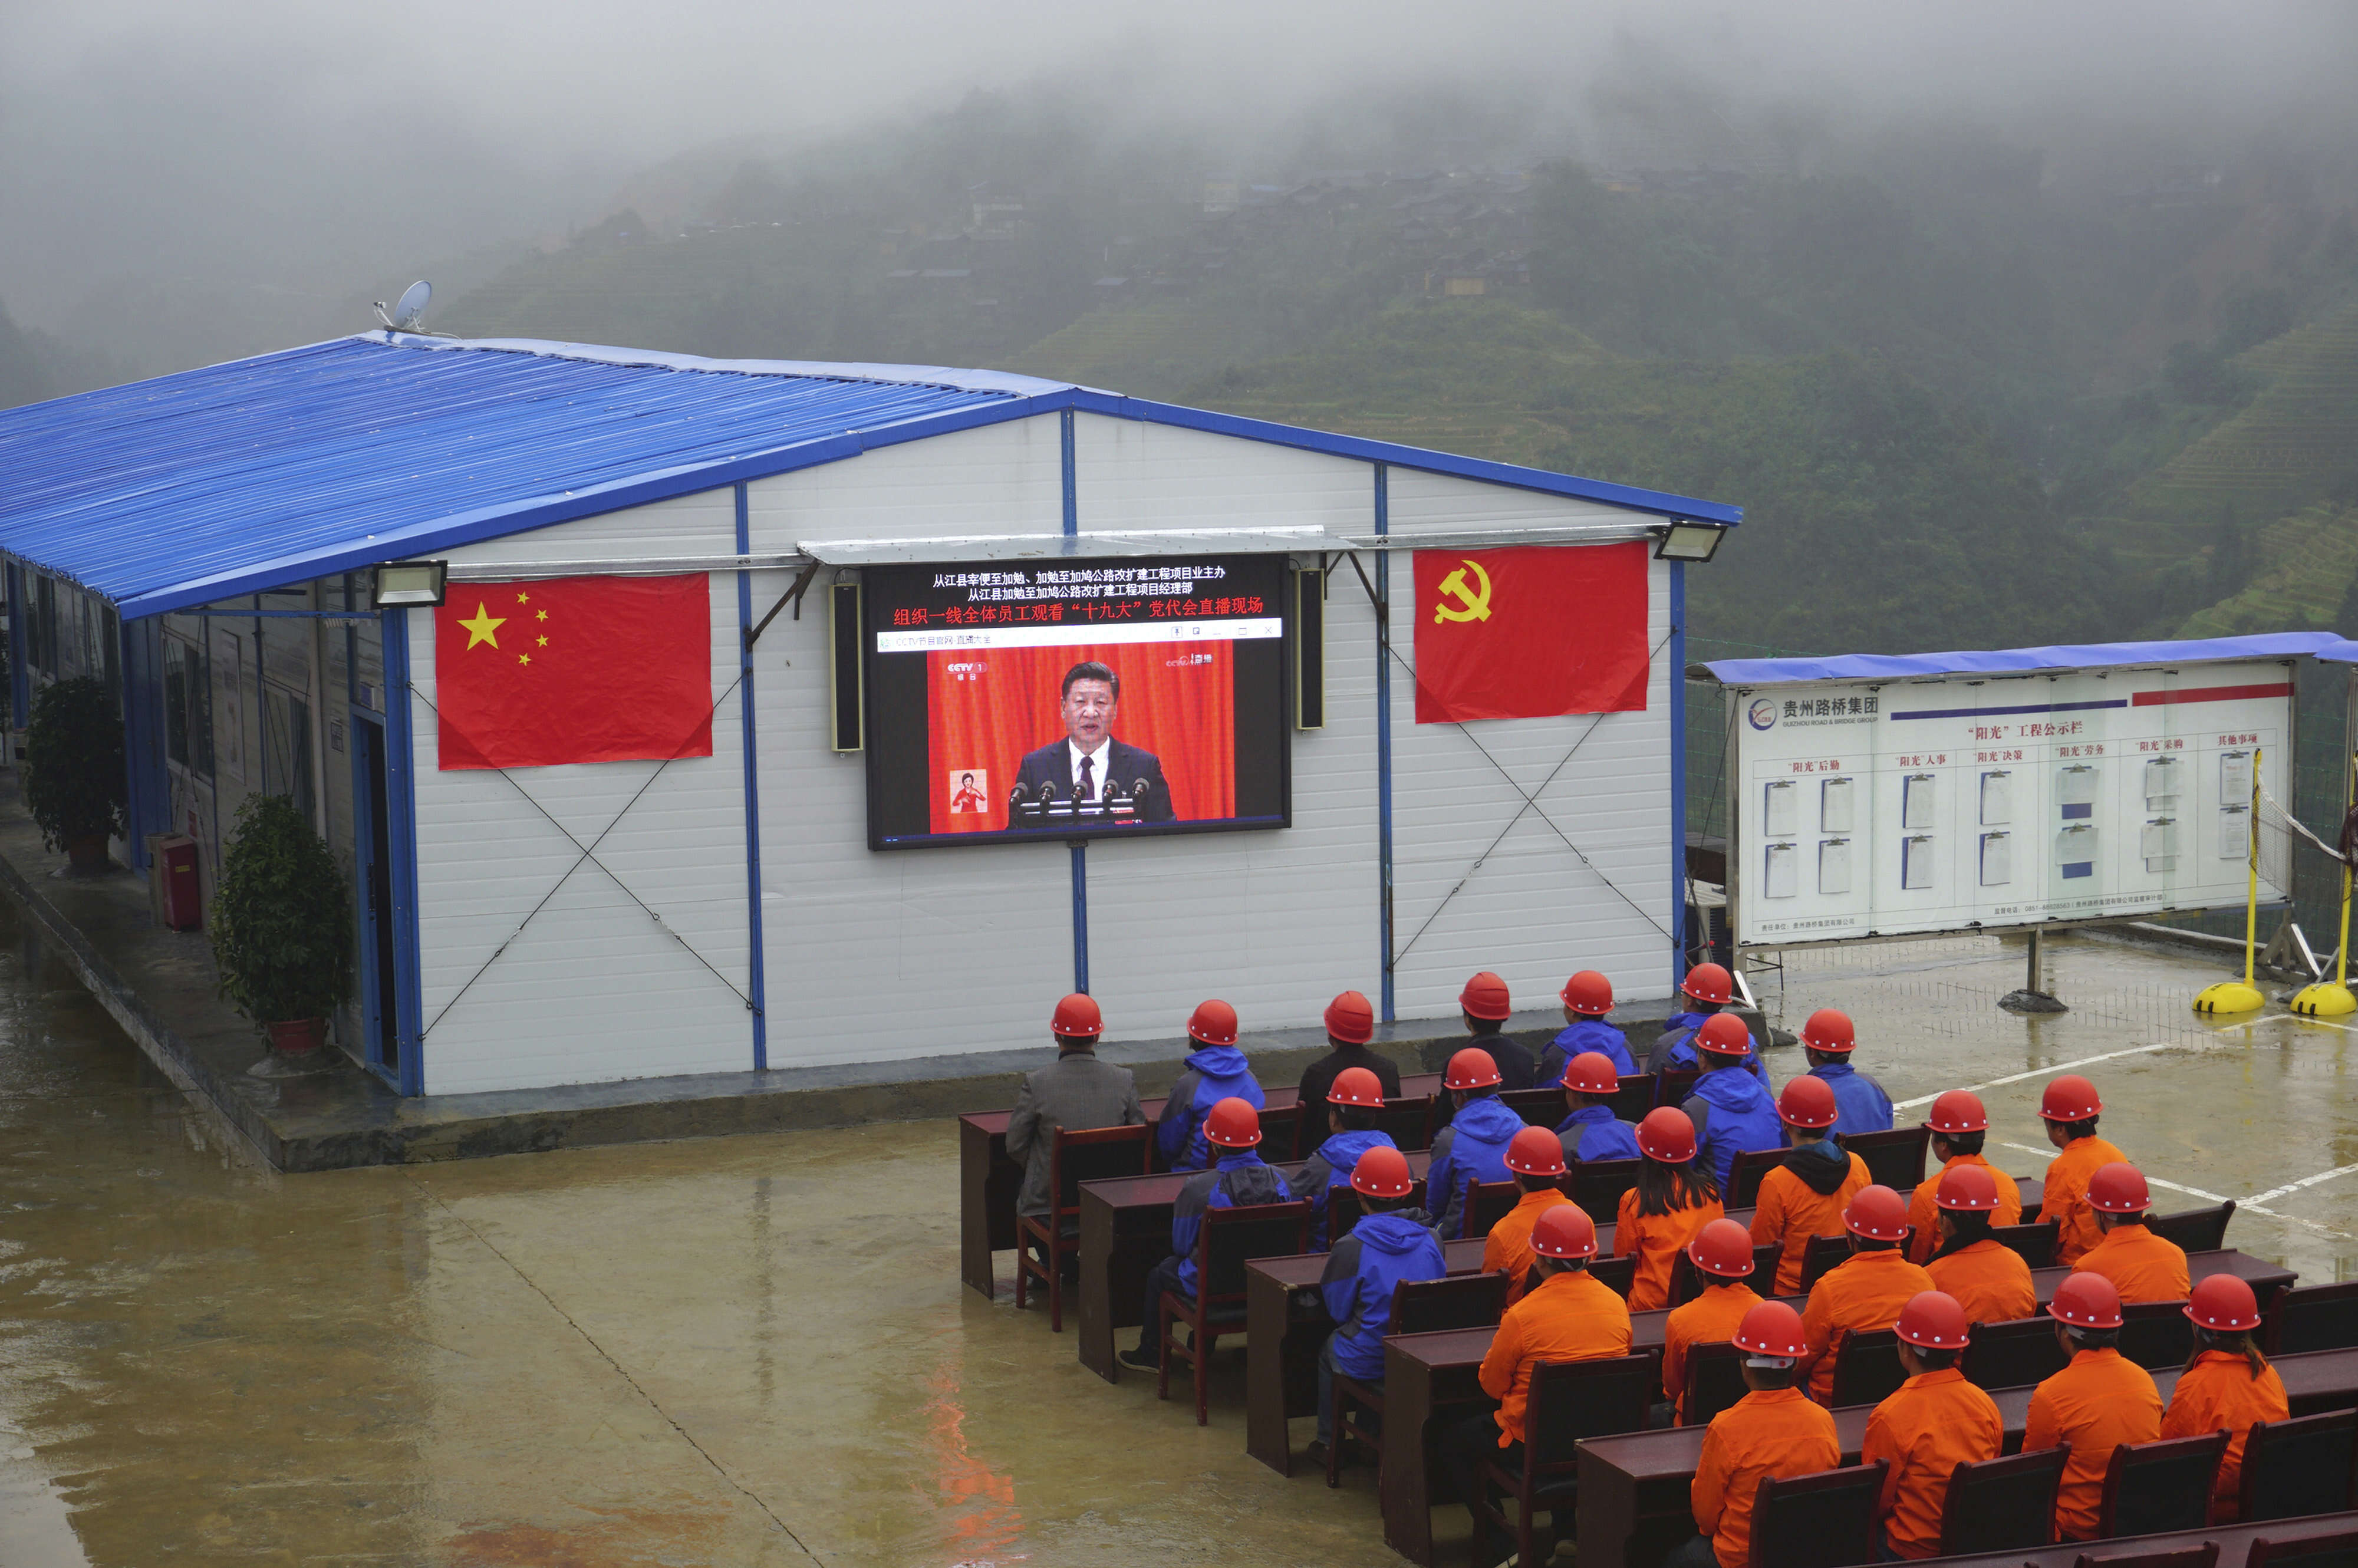 Des ouvriers d’une construction routière regardent le discours du président chinois Xi Jinping dans la région de Congjiang, situé dans le sud-ouest du pays. M. Xi a exposé, le 18 octobre, sa vision de la Chine dans un discours fleuve de plus de trois heures, lors de l’ouverture du 19e congrès du PCC, à Pékin. M. Xi a déroulé les accomplissements du parti pour les cinq années écoulées, mais aussi précisé l’ampleur des ambitions et des projets qu’il nourrit pour les cinq années à venir – et au-delà.